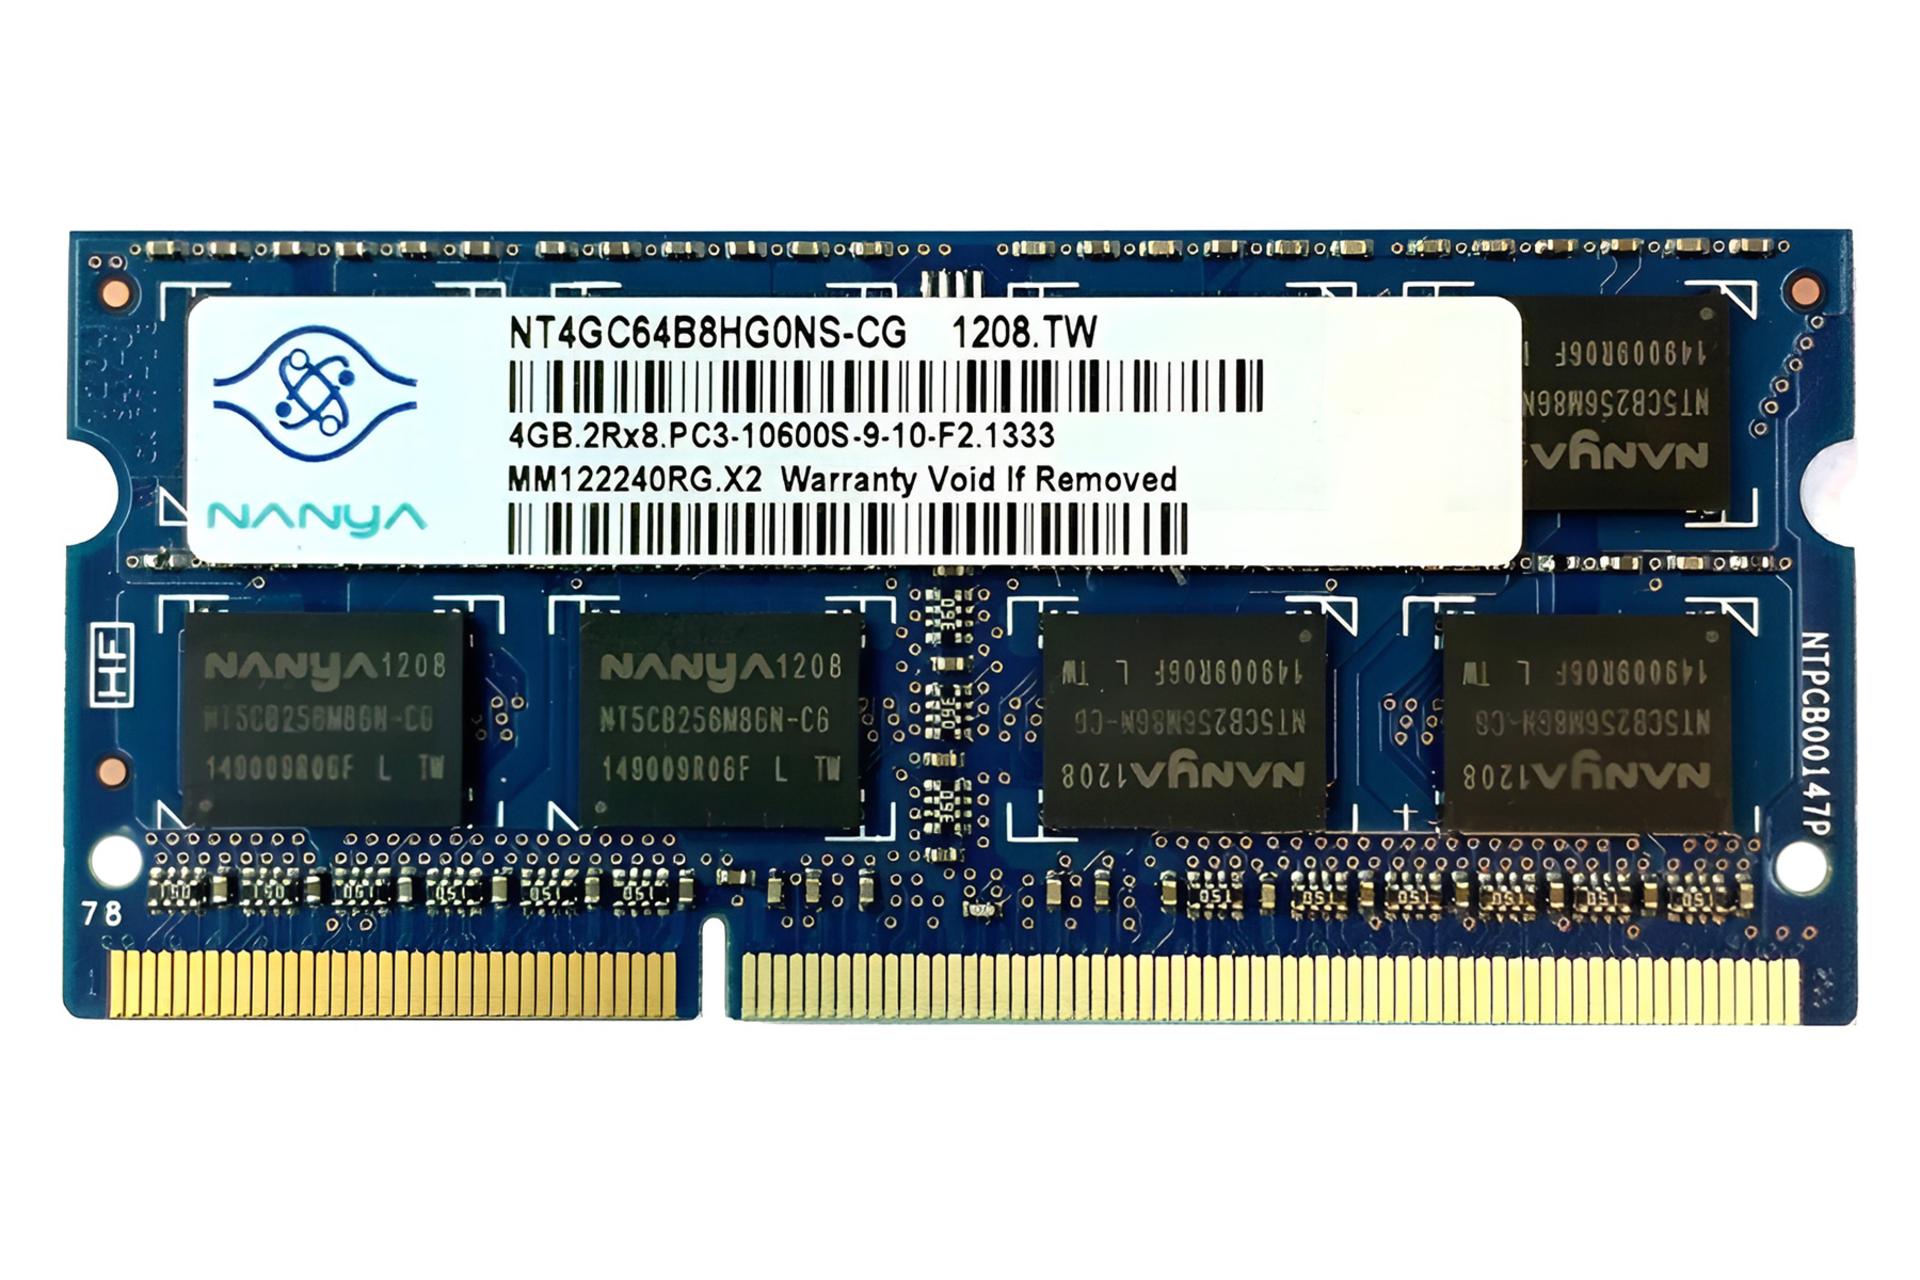 رم نانیا Nanya NT4GC64B8HG0NS-CG 4GB DDR3-1333 CL9